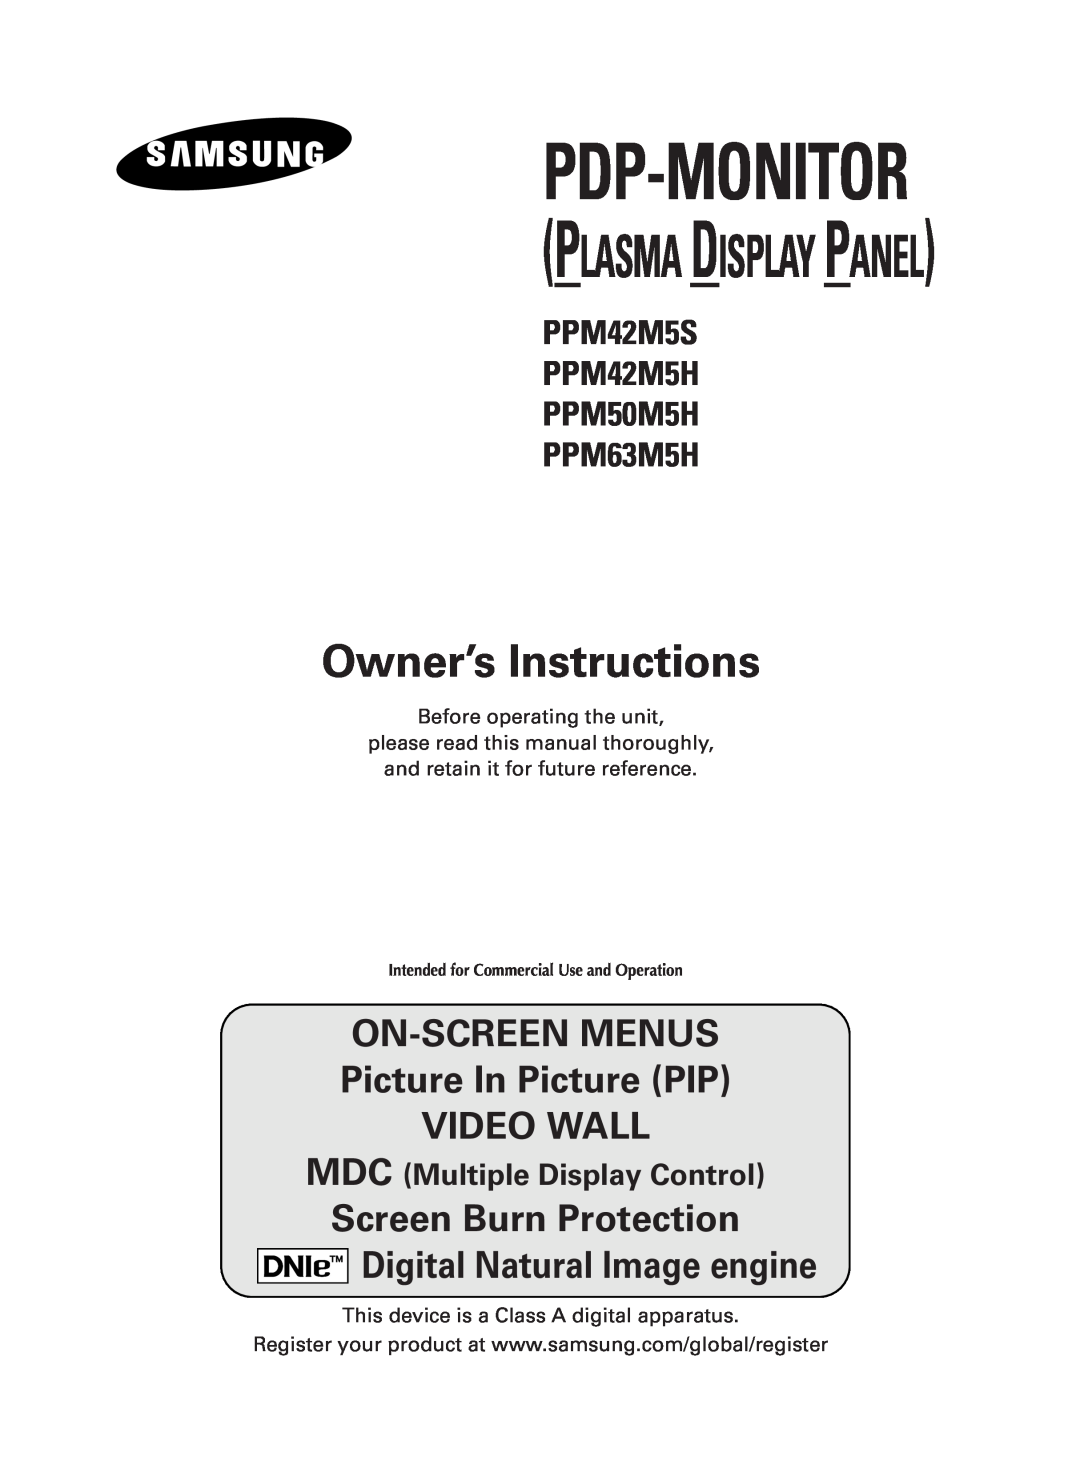 Samsung PPM42M5HSX/EDC manual PPM42M5S PPM42M5H PPM50M5H PPM63M5H, Avsedd för kommersiellt bruk, Pdp-Monitor 